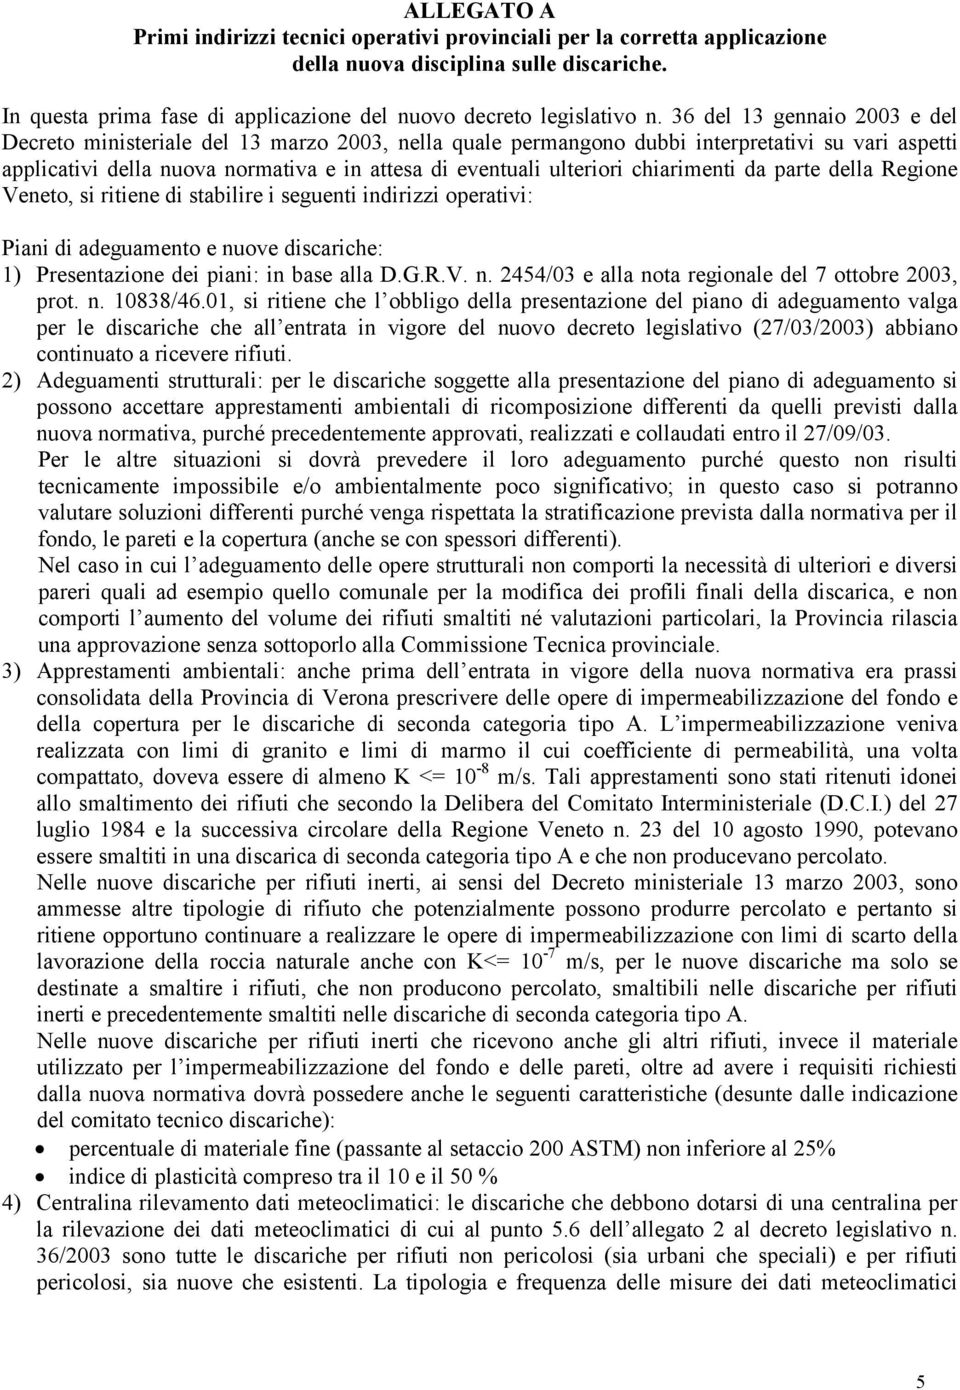 chiarimenti da parte della Regione Veneto, si ritiene di stabilire i seguenti indirizzi operativi: Piani di adeguamento e nuove discariche: 1) Presentazione dei piani: in base alla D.G.R.V. n. 2454/03 e alla nota regionale del 7 ottobre 2003, prot.